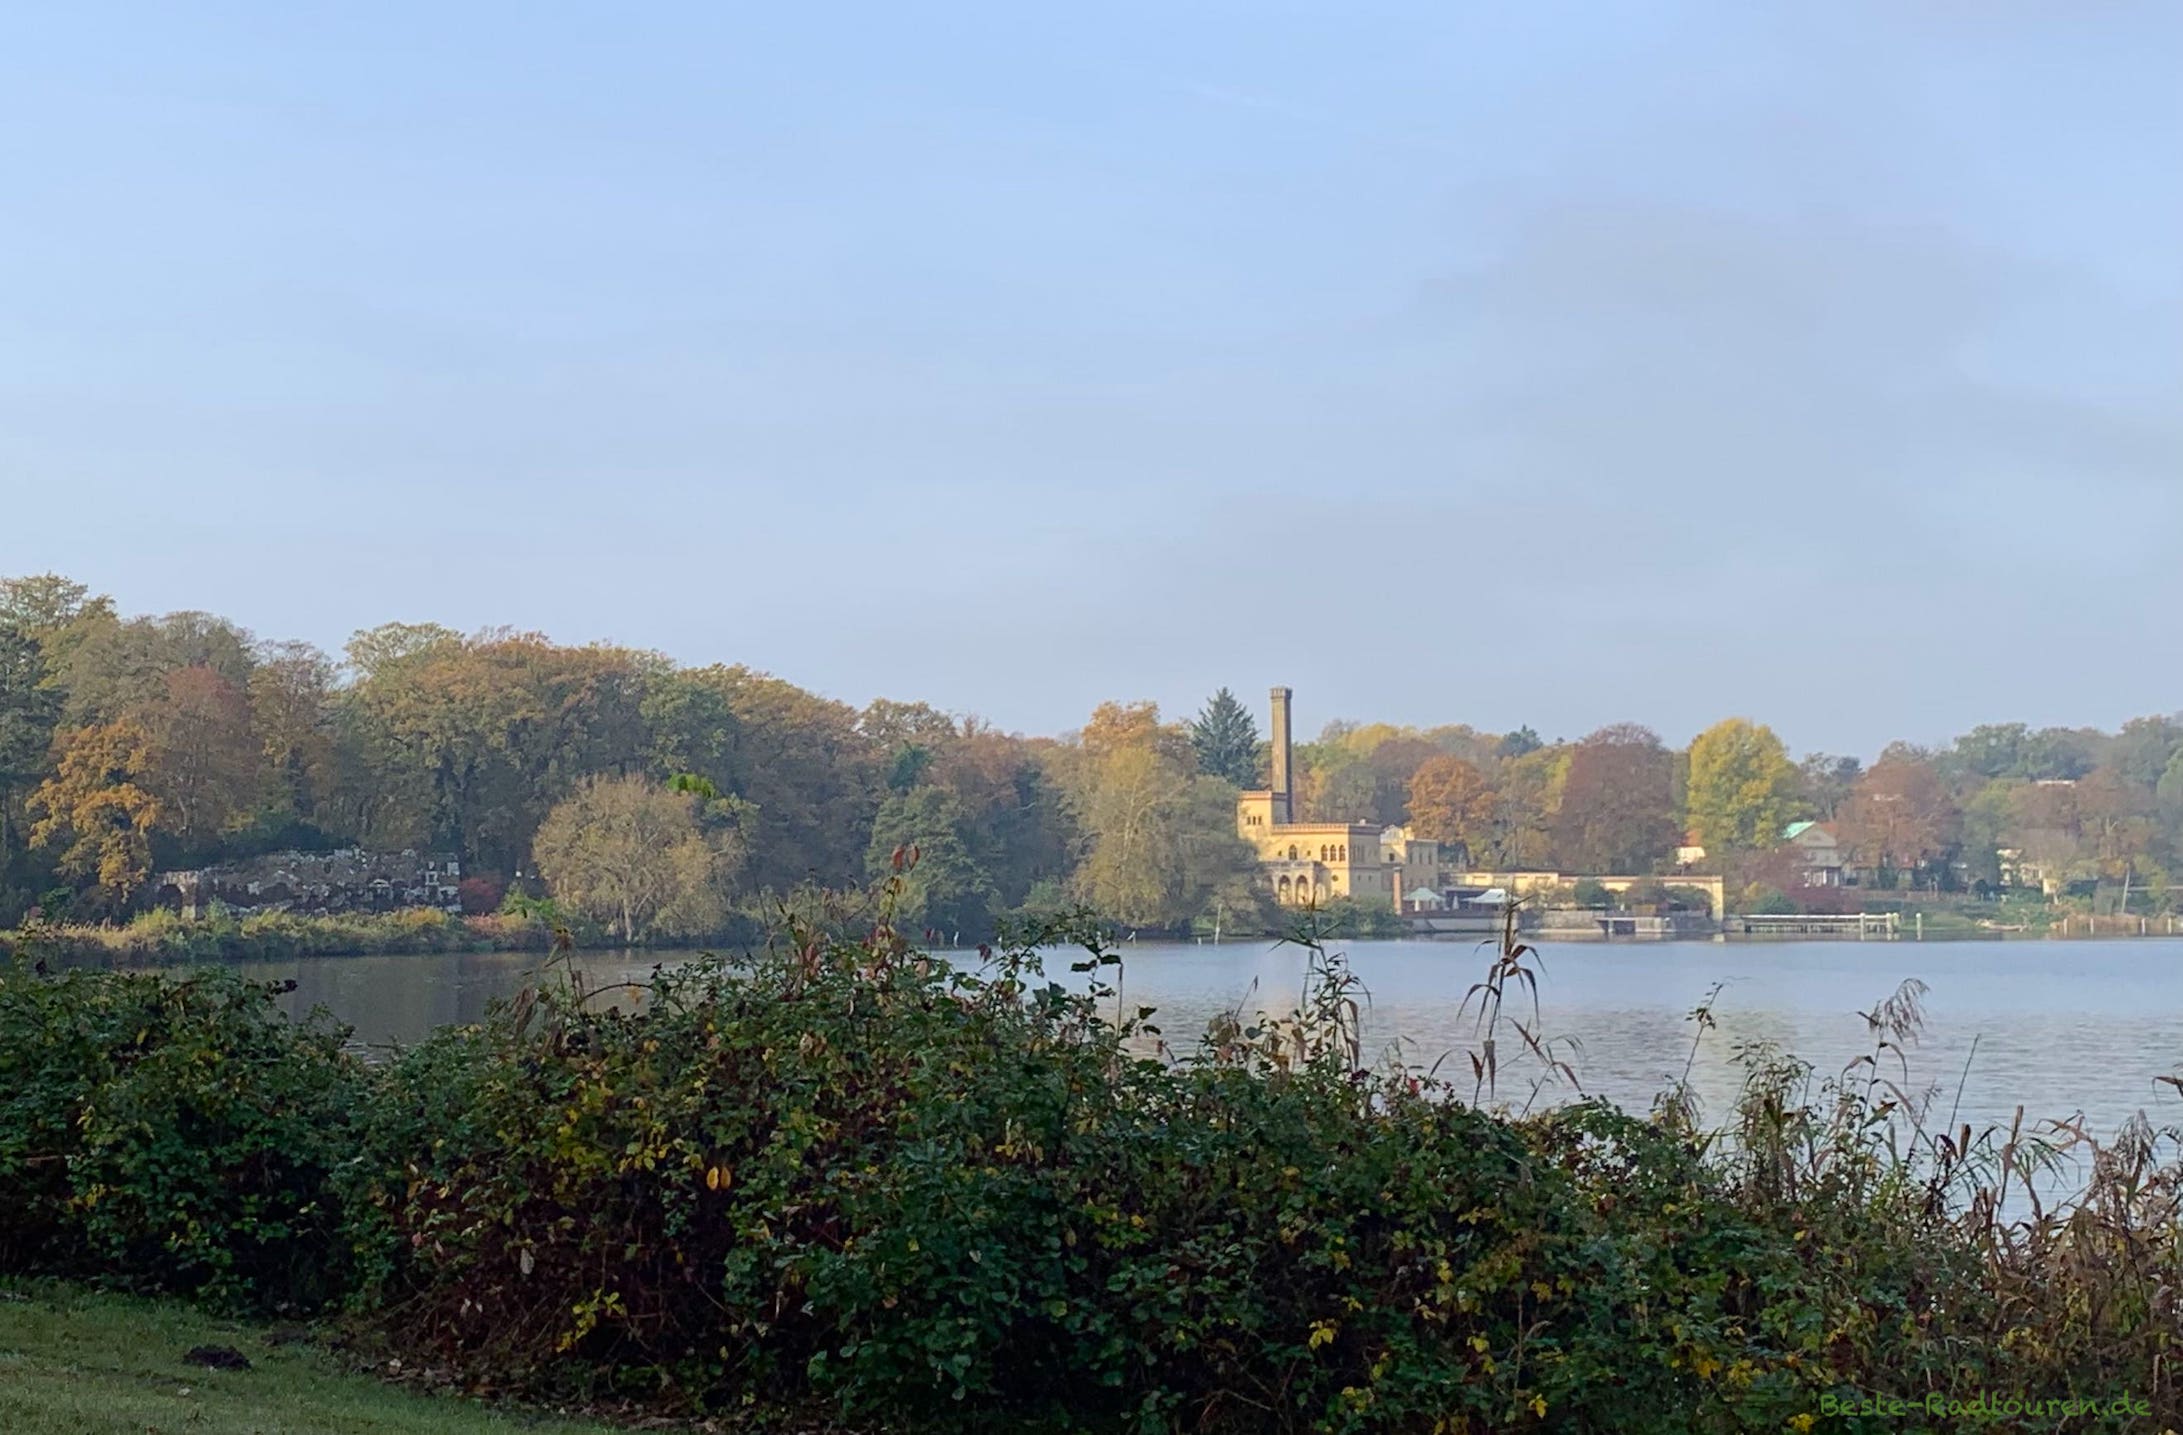 Foto vom Radweg im Neuen Garten Potsdam aus: Jungfernsee, Alte Meierei und Muschelgrotte